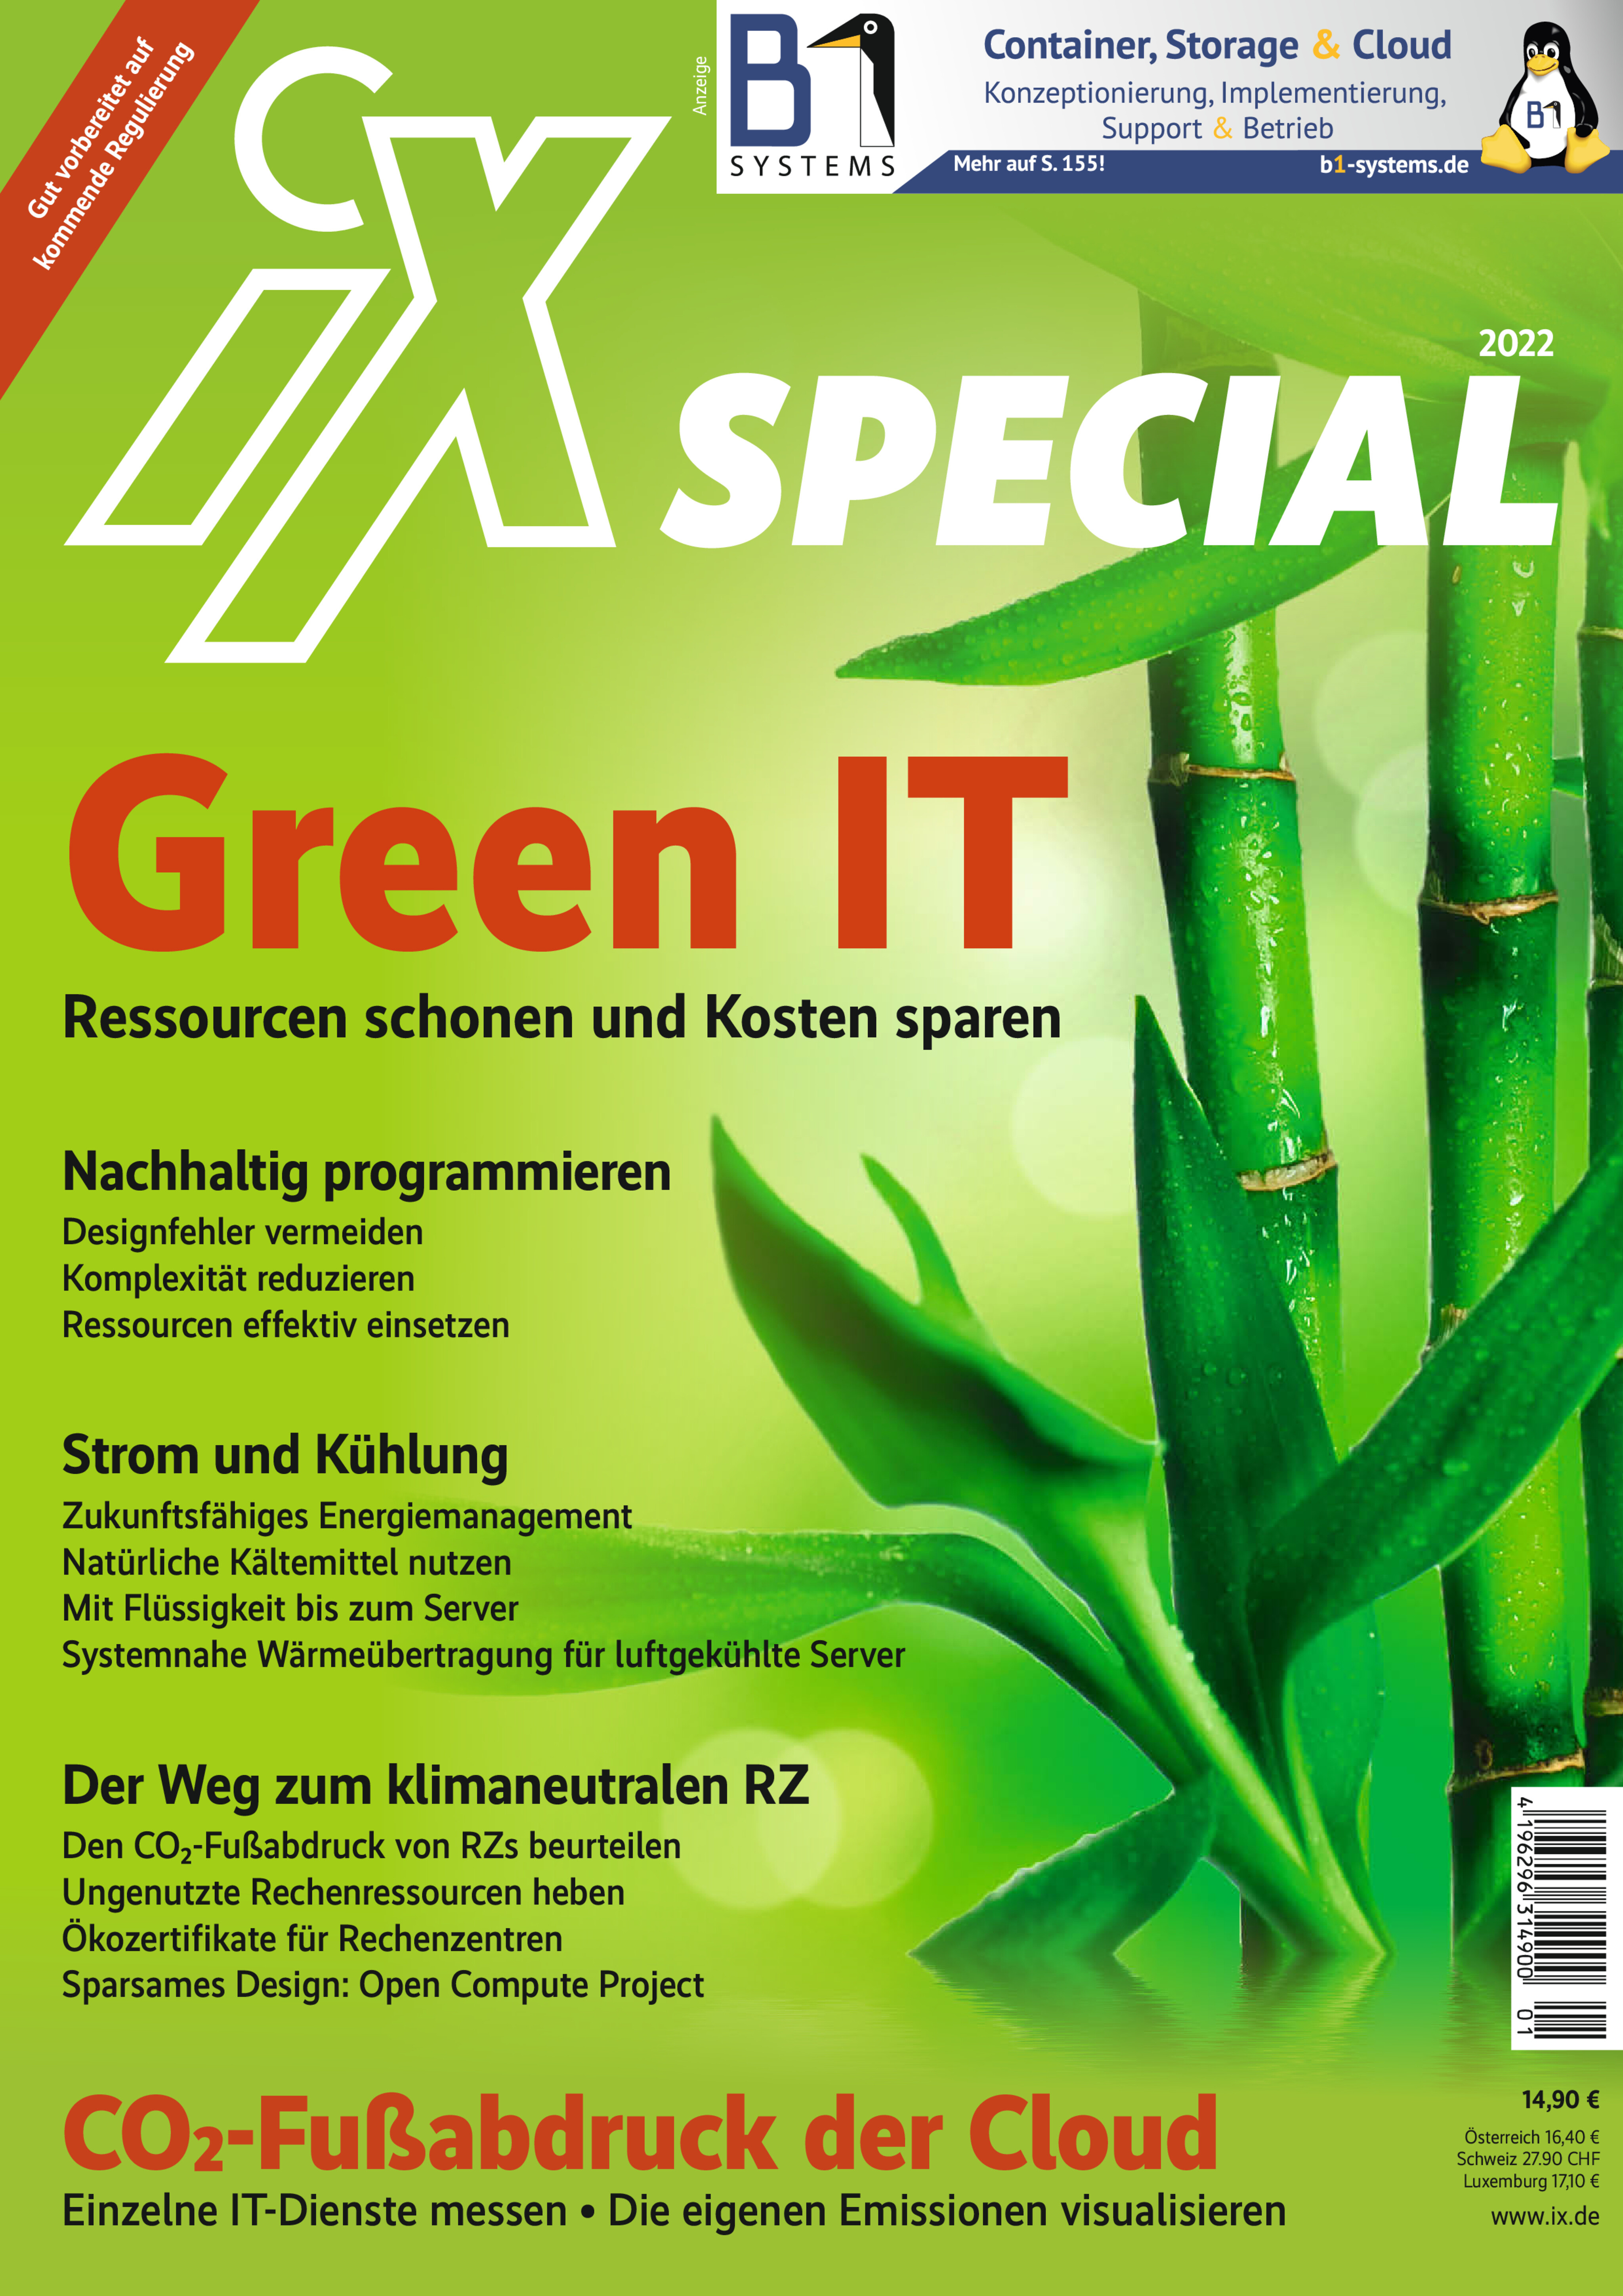 iX Special 2022 - Green IT